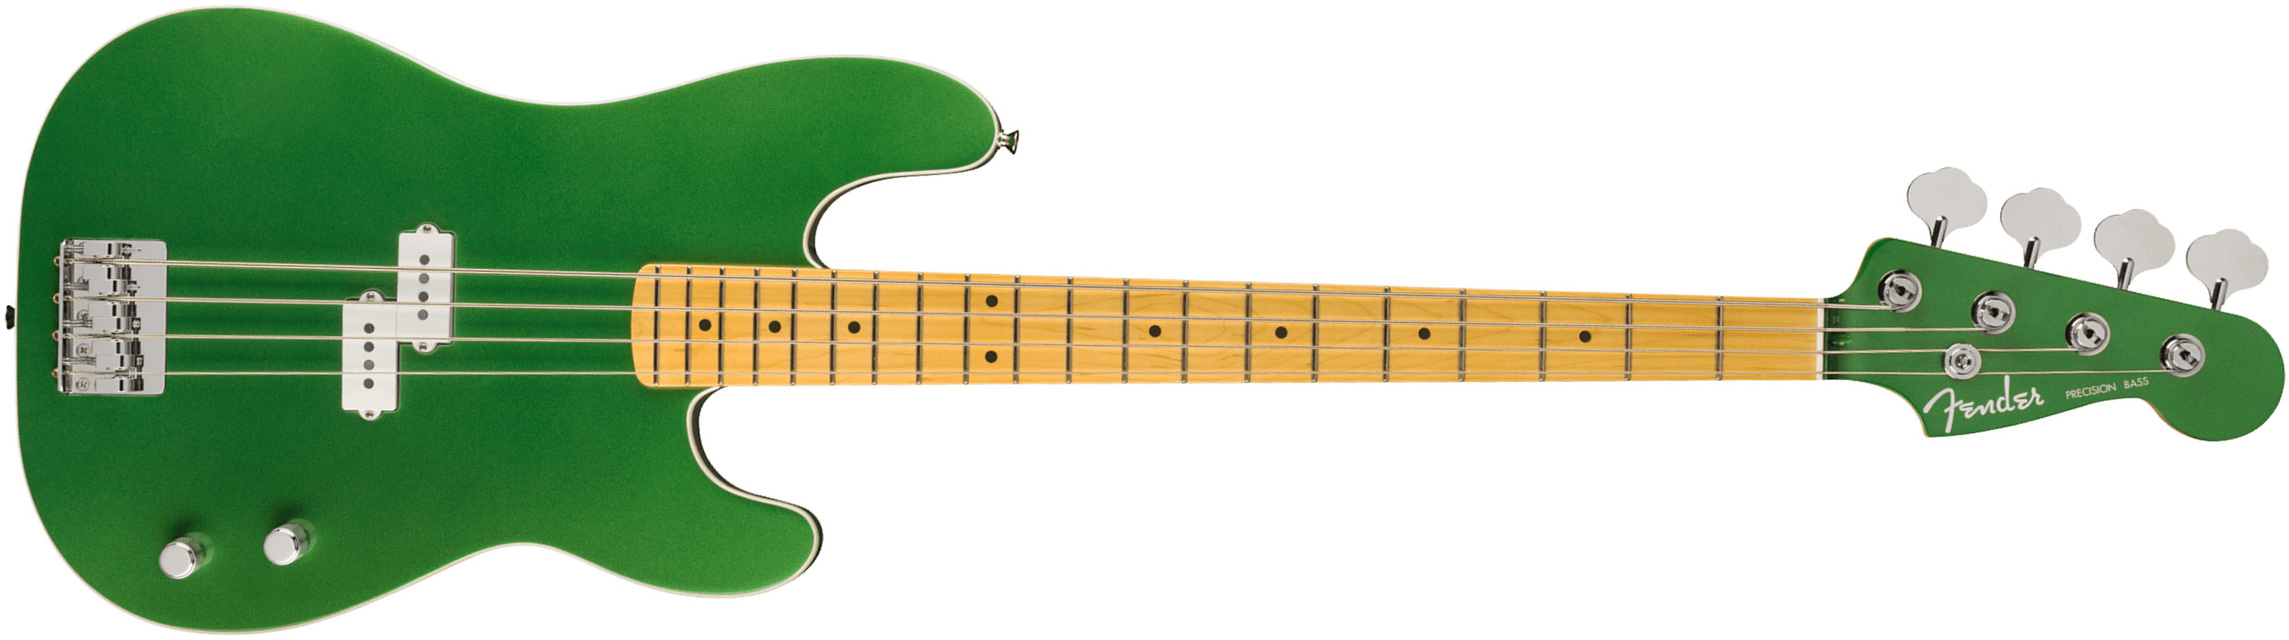 Fender Precision Bass Aerodyne Special Jap Mn - Speed Green Metallic - Bajo eléctrico de cuerpo sólido - Main picture